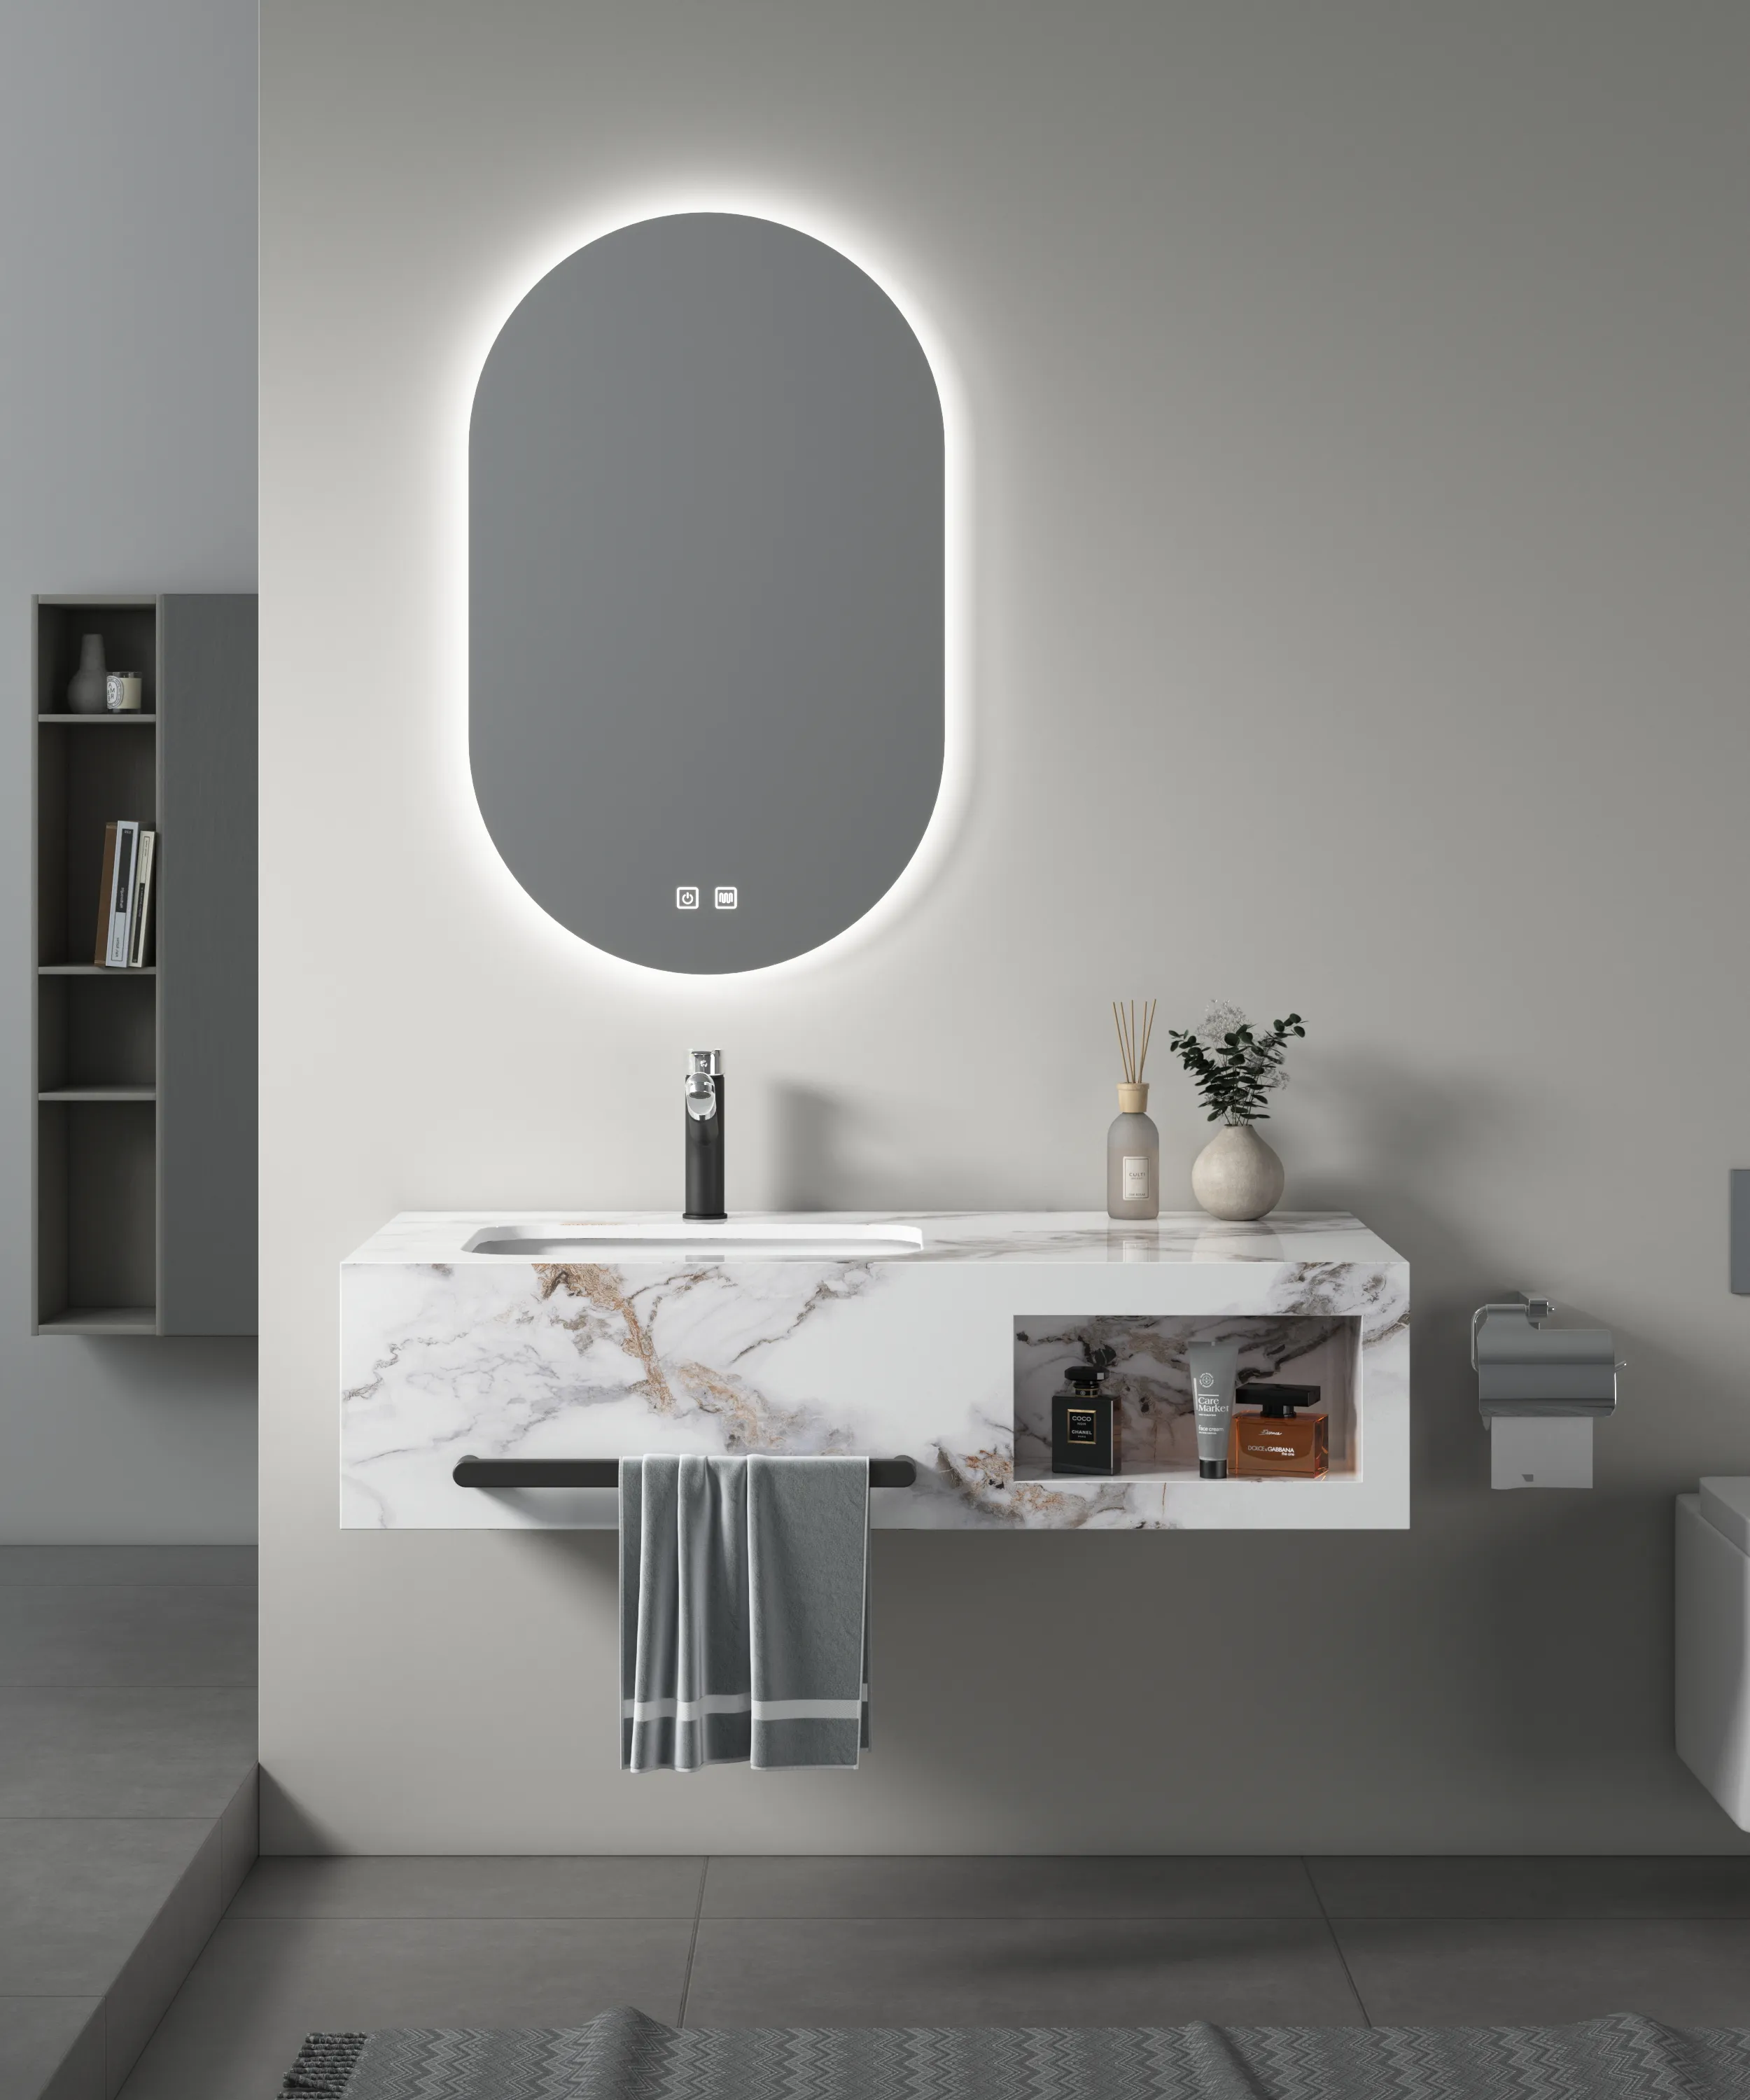 Оптовая продажа для гостиничного проекта, мебель для ванной комнаты, каменная плита, Спеченный камень для ванной комнаты, шкафчик под раковину со светодиодным зеркалом